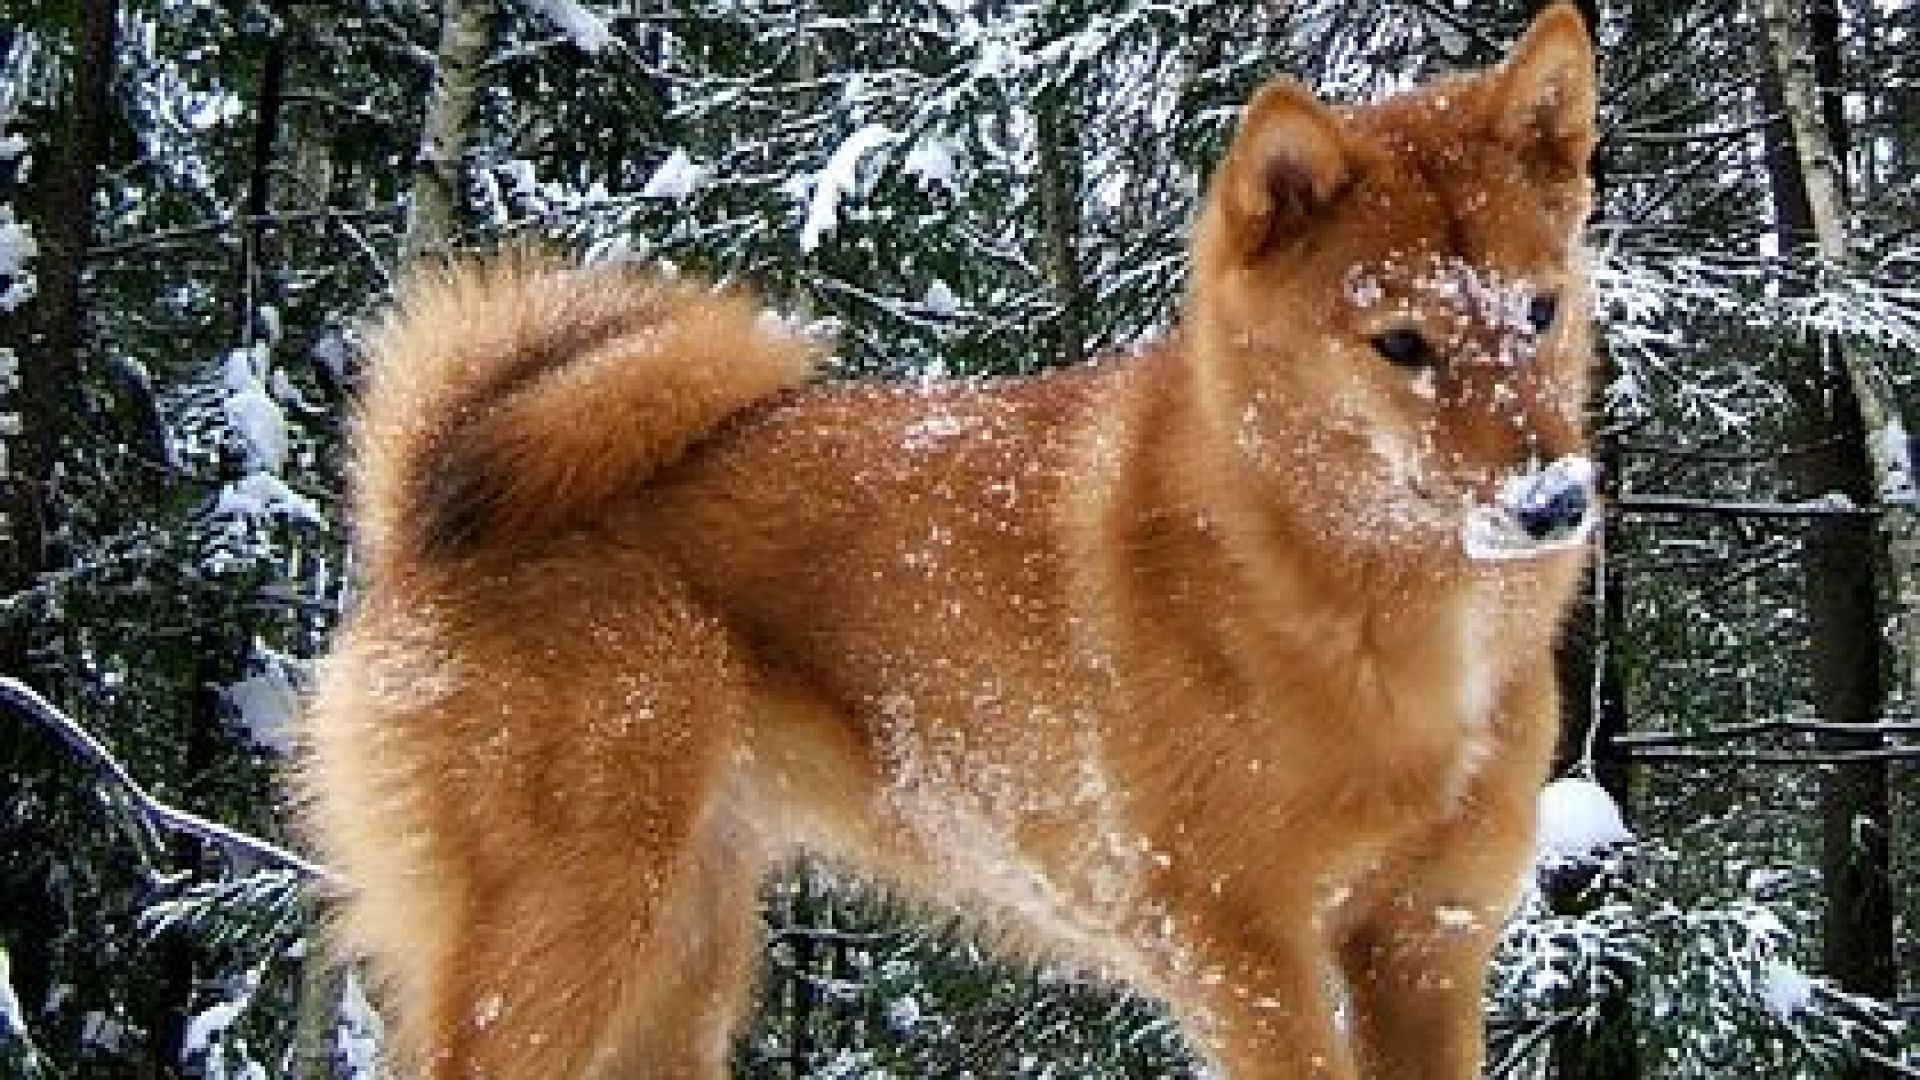 В Русия се появи нова порода кучета